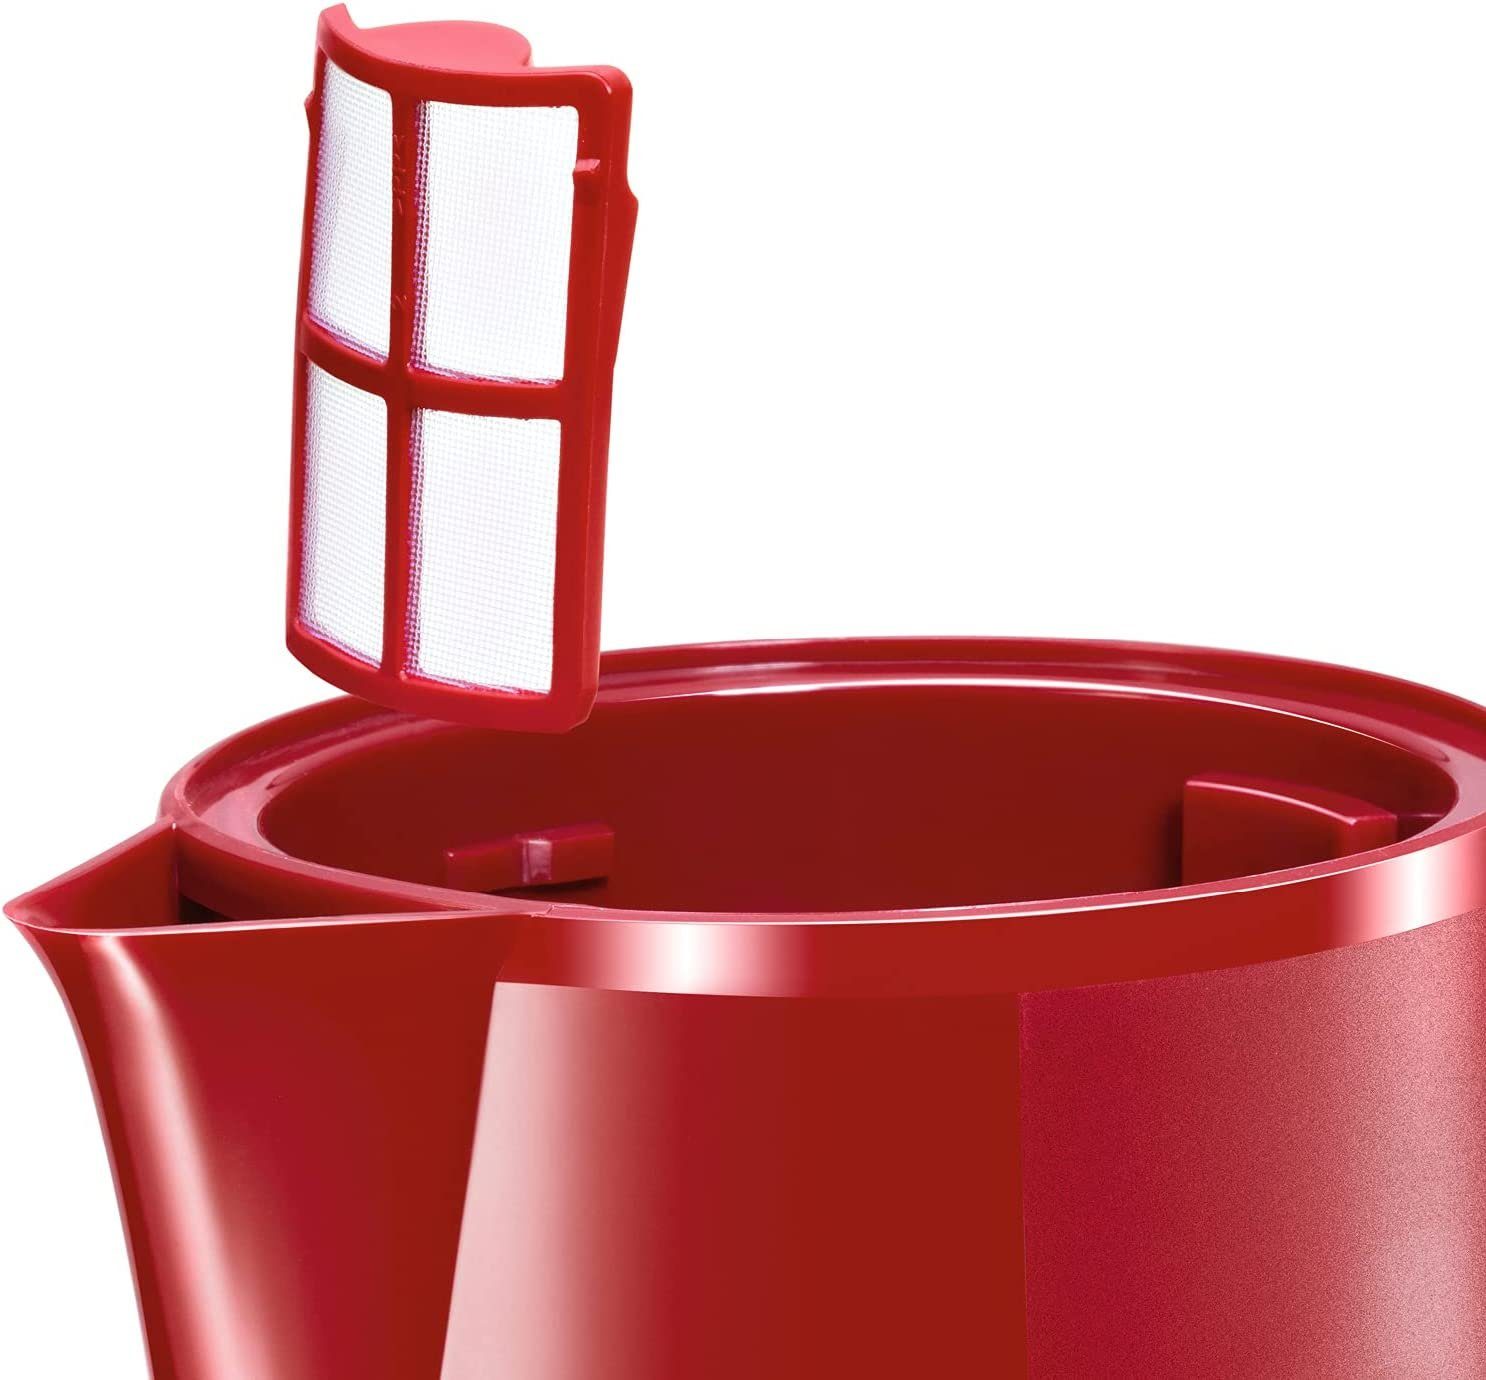 kabelloser Wasserstandsanzeige 2400 W BOSCH Rot Wasserkocher CompactClass, Wasserkocher